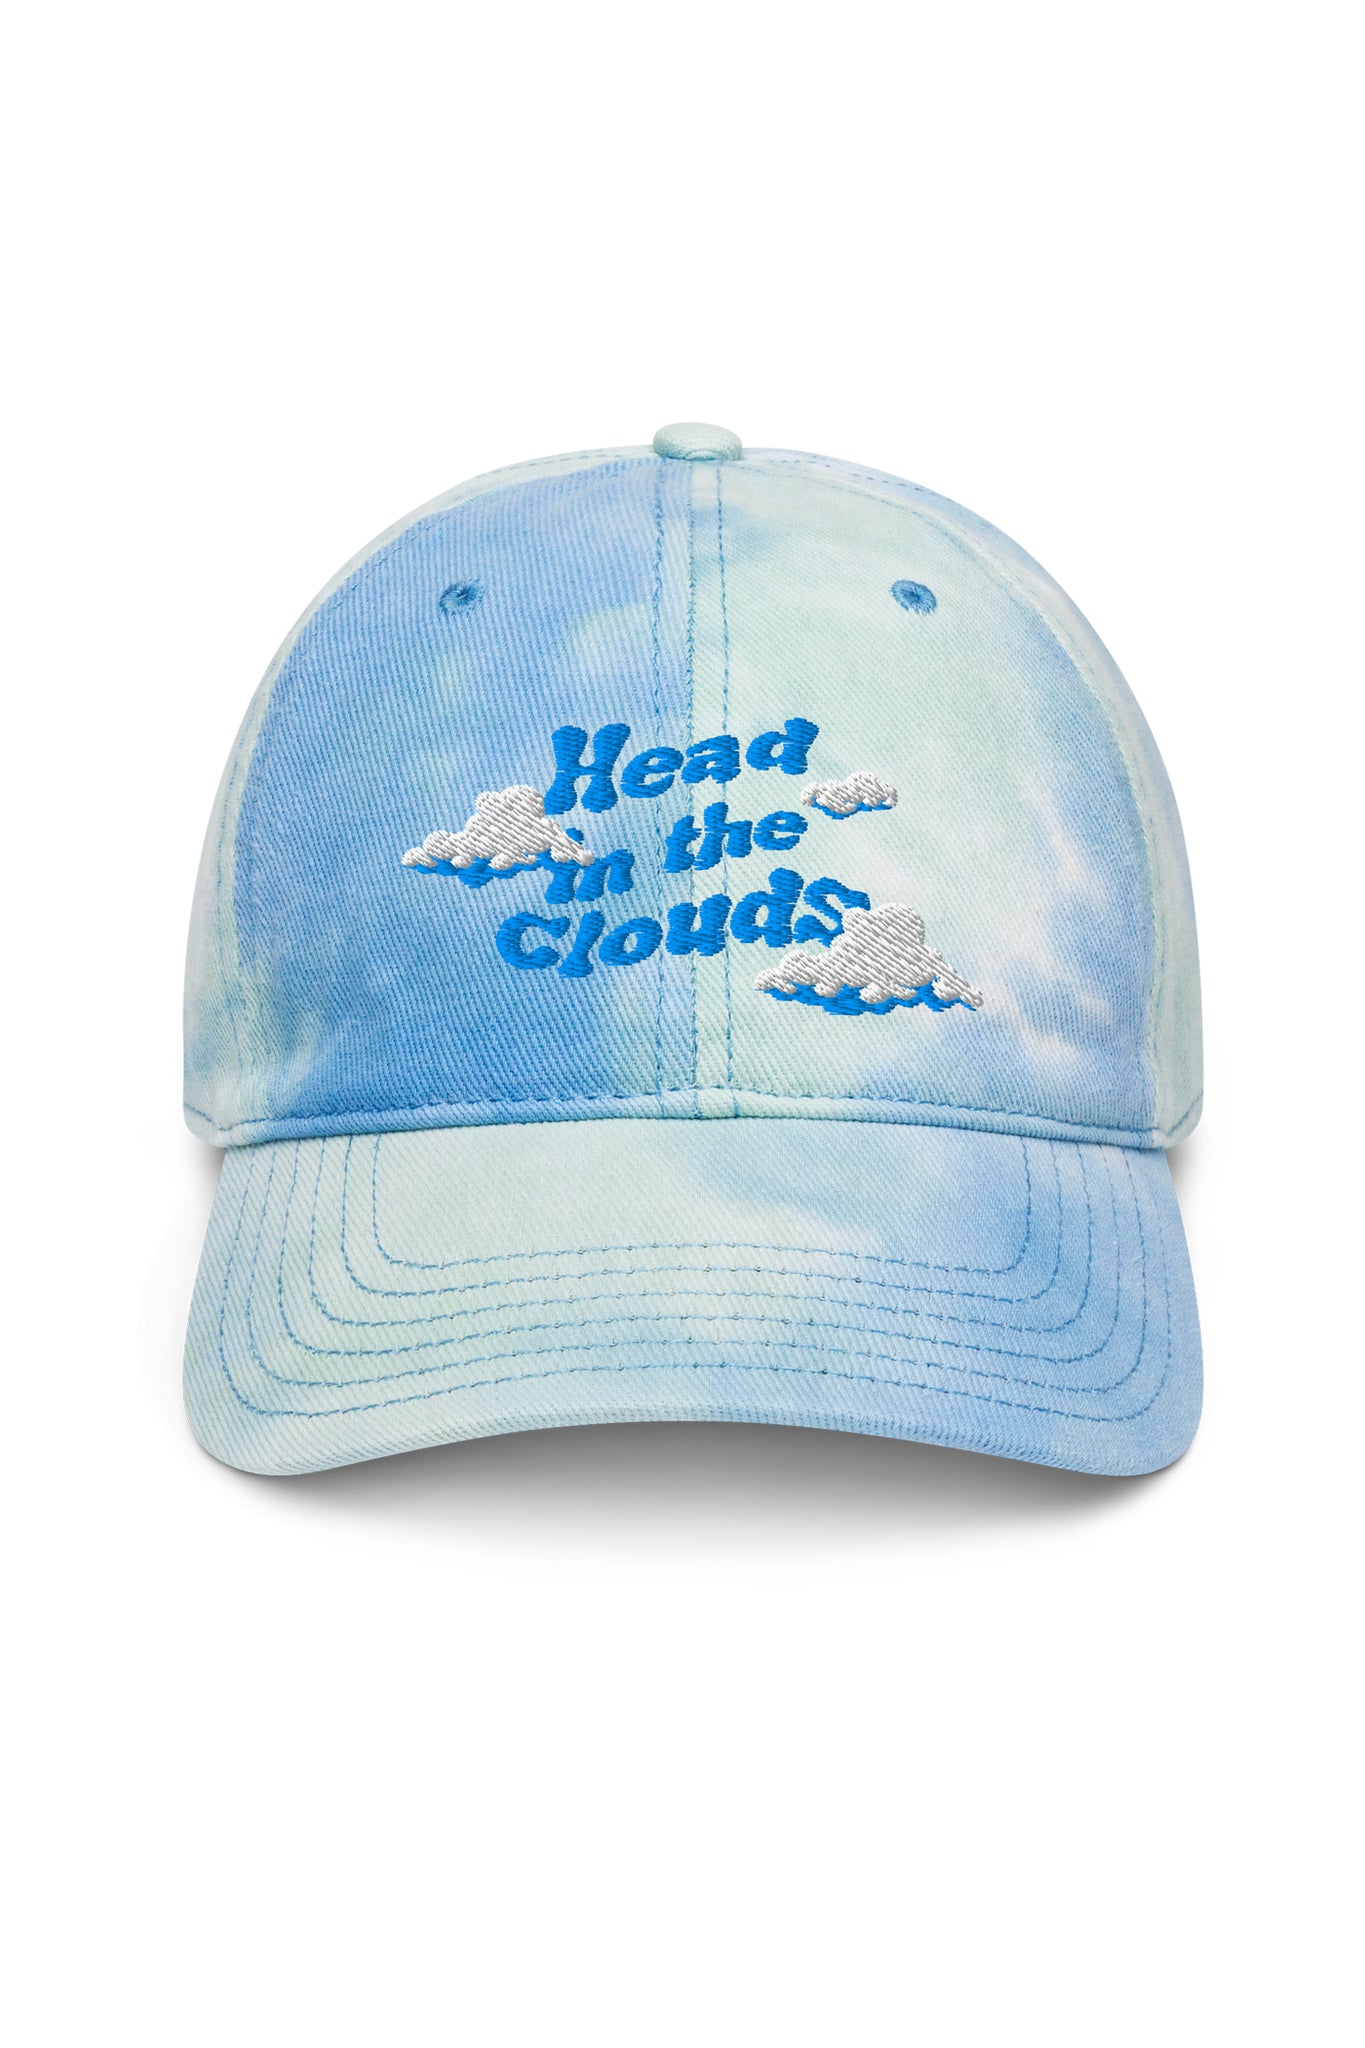 Head In The Clouds ☁︎ Tie Dye Hat